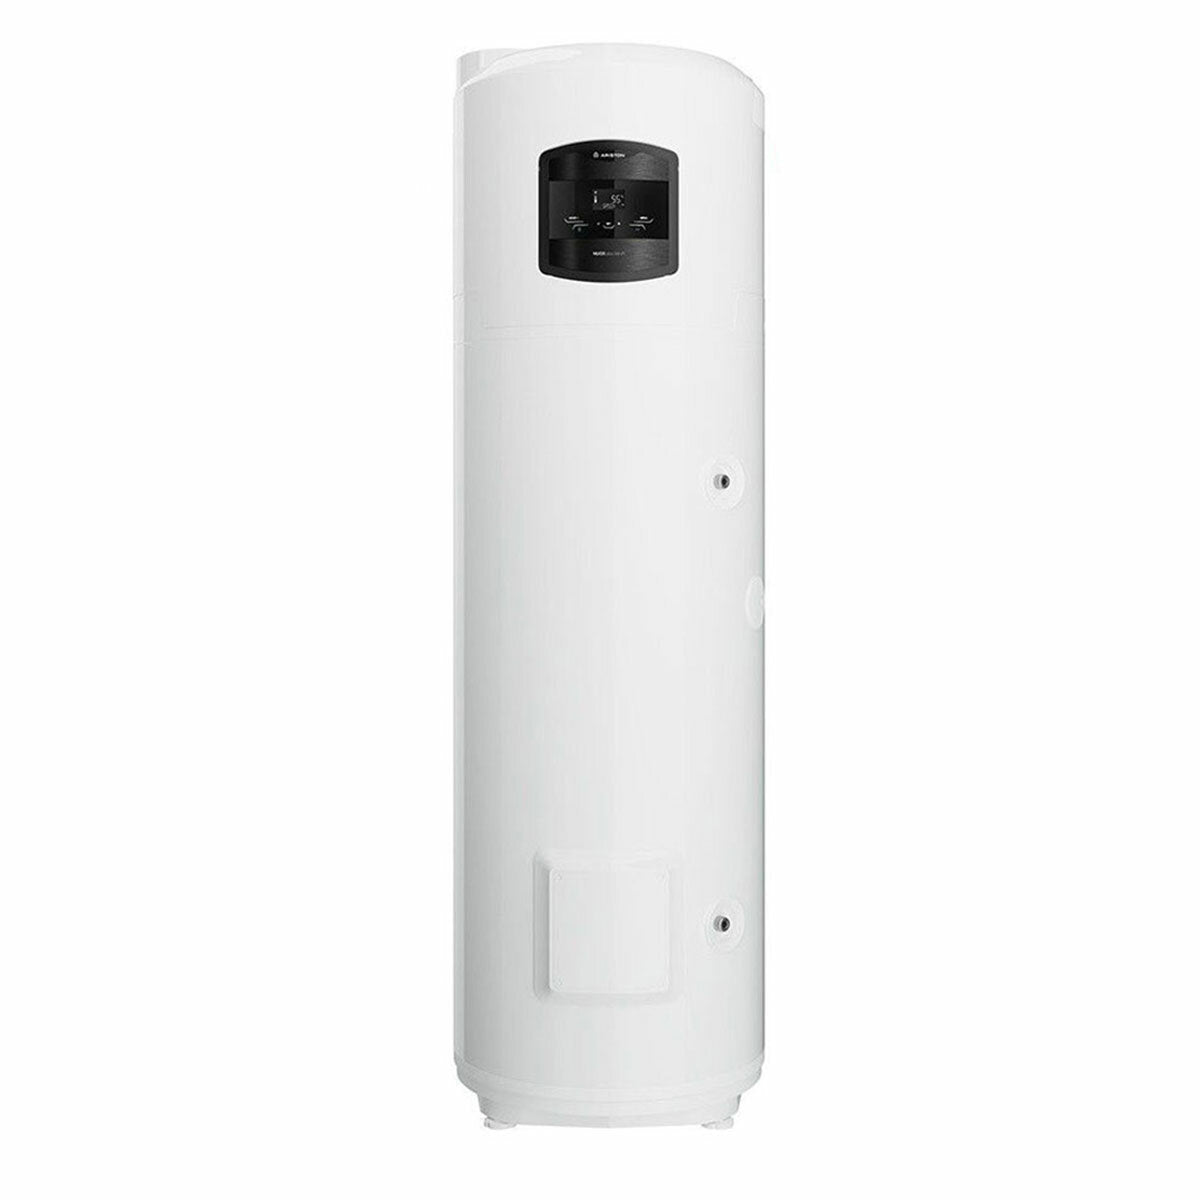 Chauffe-eau pompe à chaleur Ariston Nuos PLUS Wi-Fi 250 SYS - 250 litres A+ avec serpentin